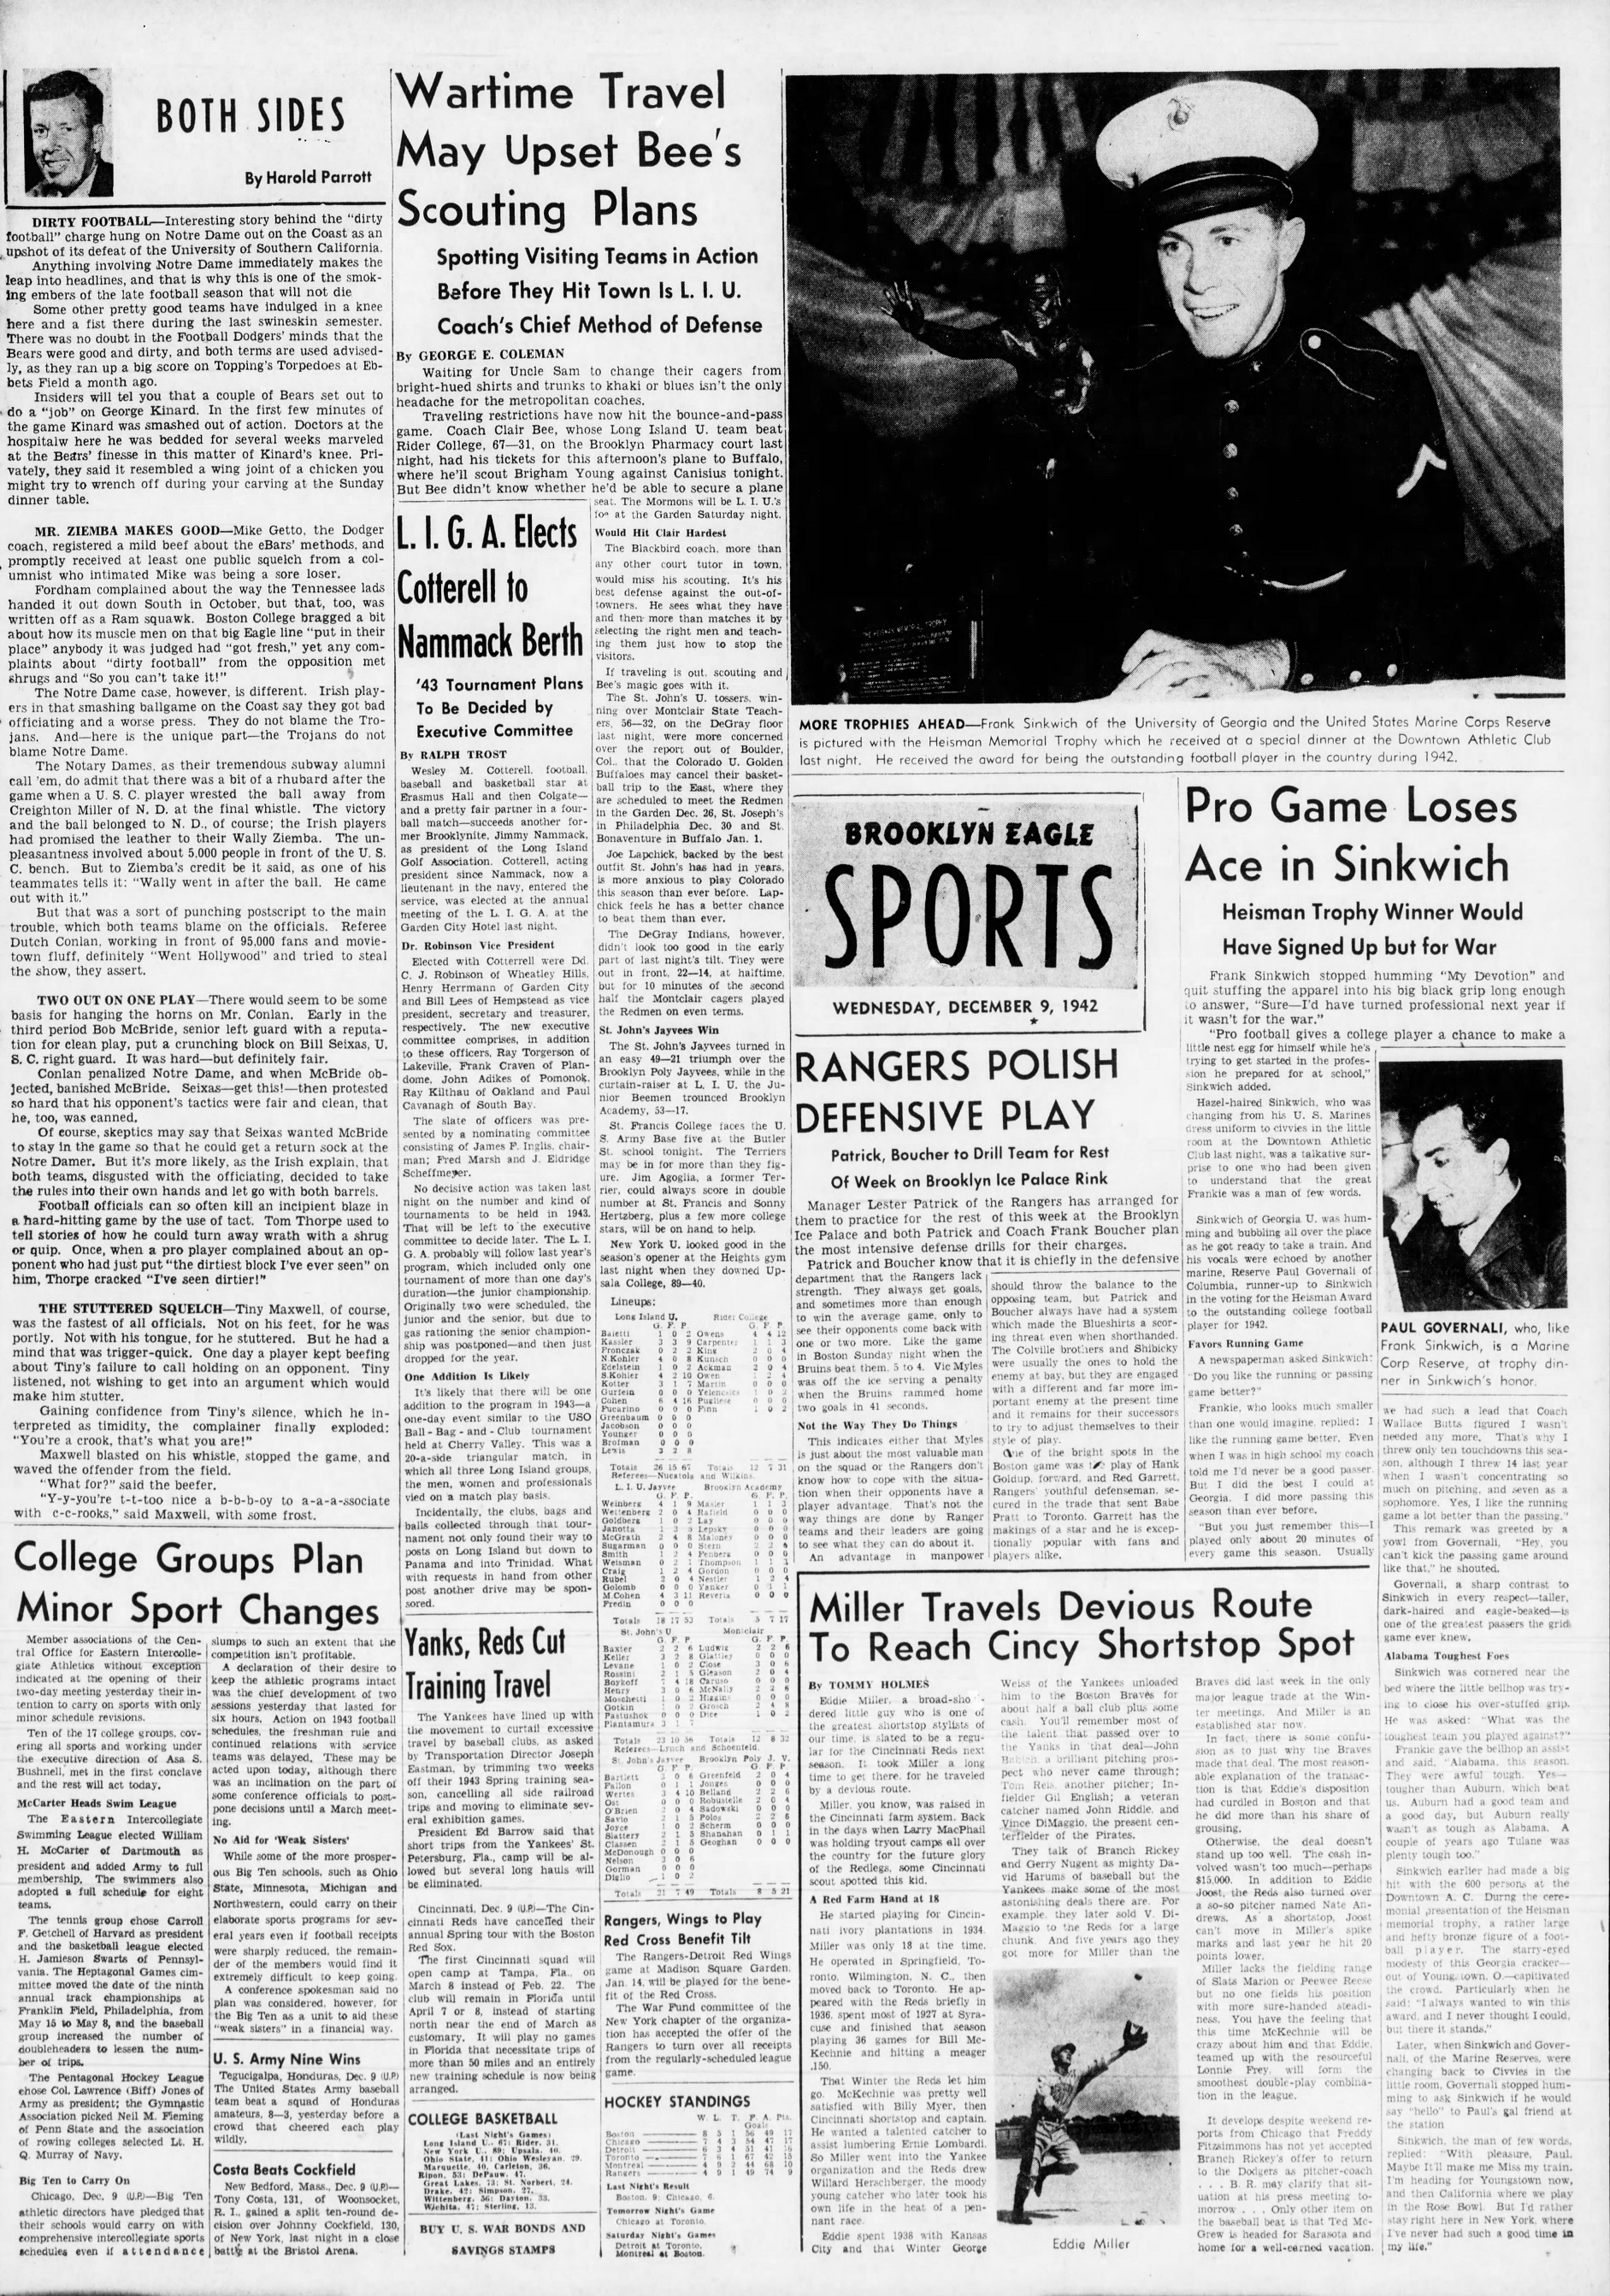 The_Brooklyn_Daily_Eagle_Wed__Dec_9__1942_(5).jpg